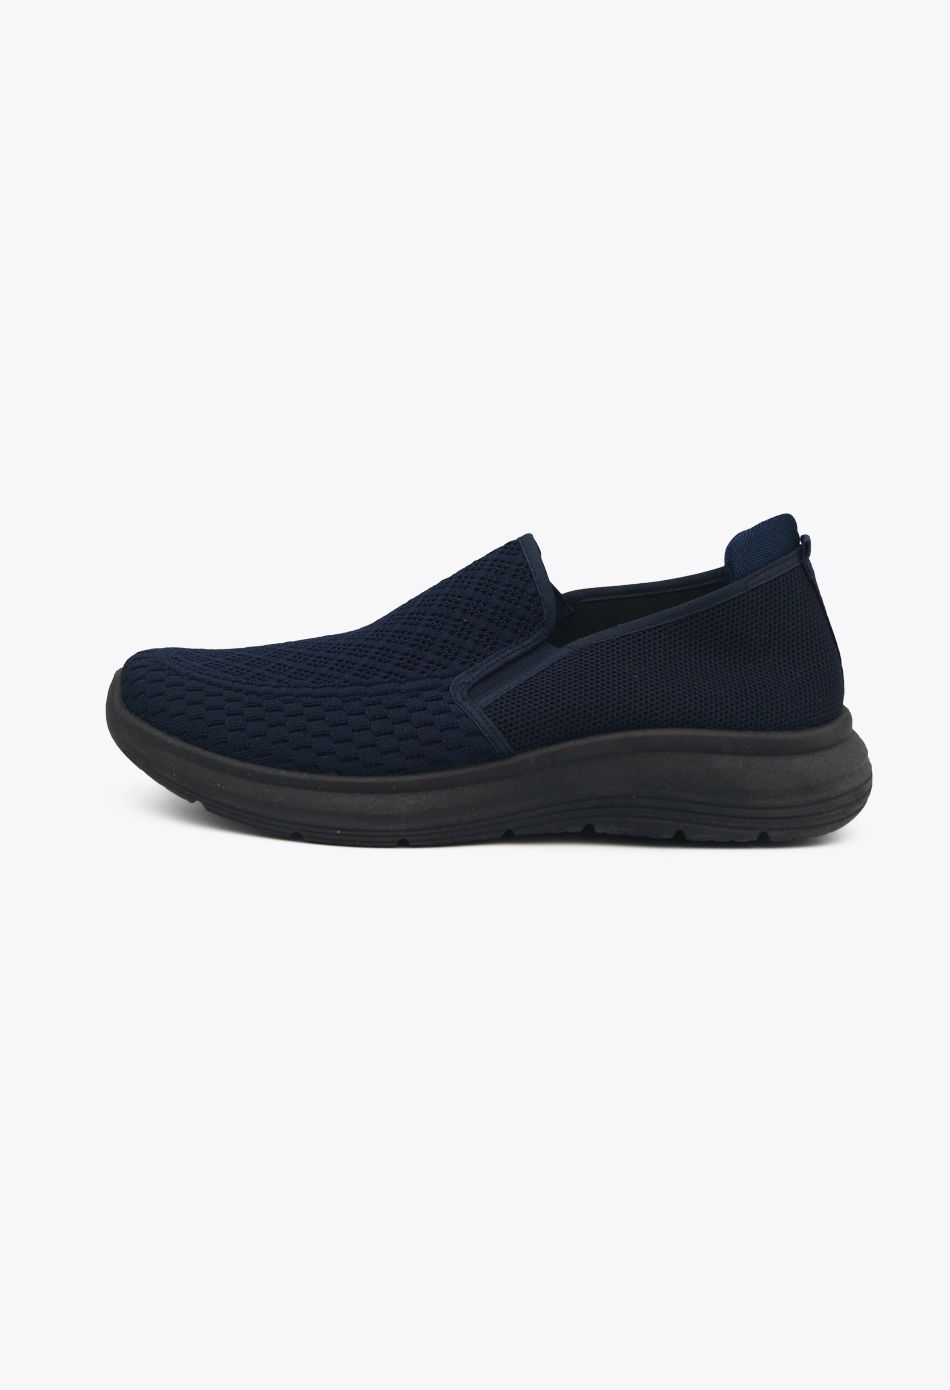 Ανδρικά Boat Shoes σε Μπλε Χρώμα / 2022B-blue OXFORDS & CASUAL joya.gr